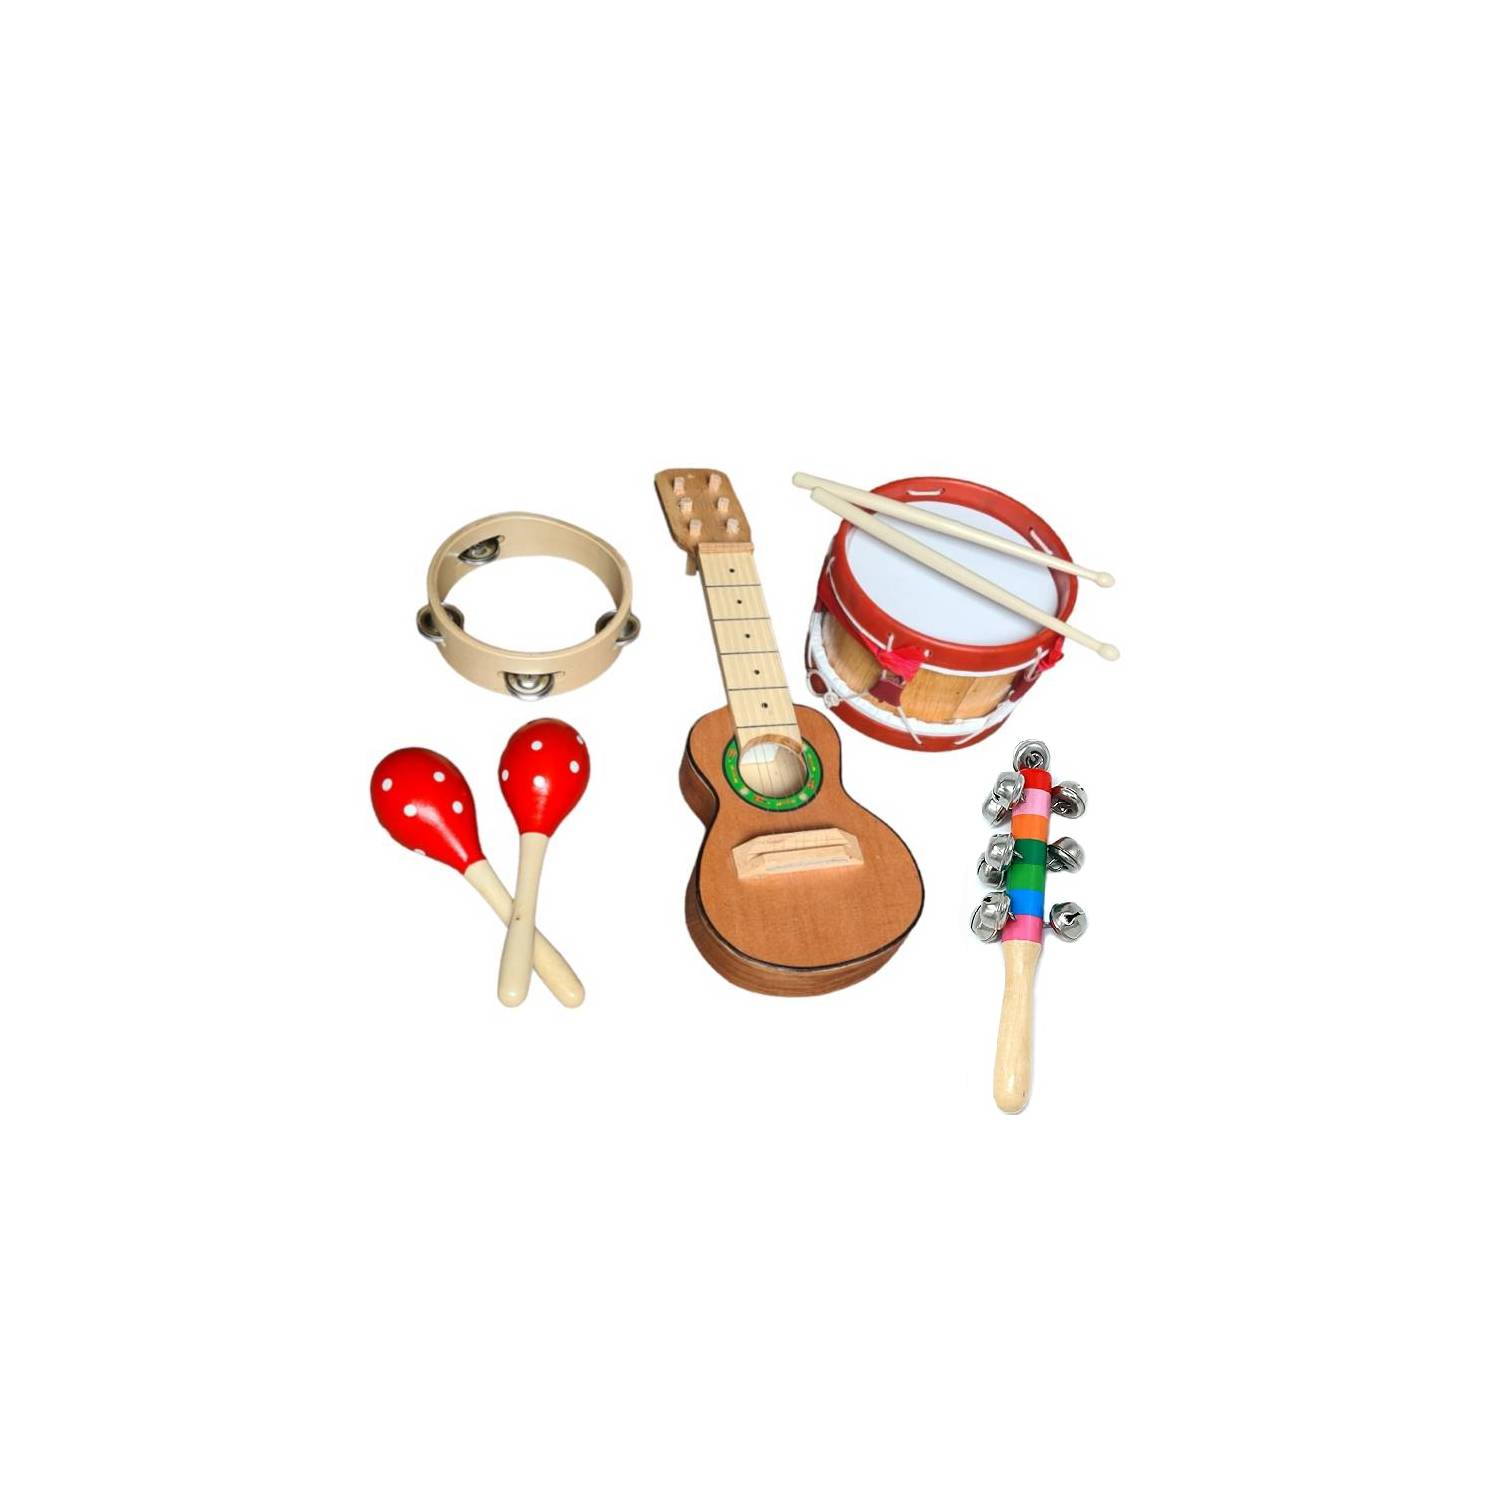  Ehome Instrumentos musicales Juguetes para niños